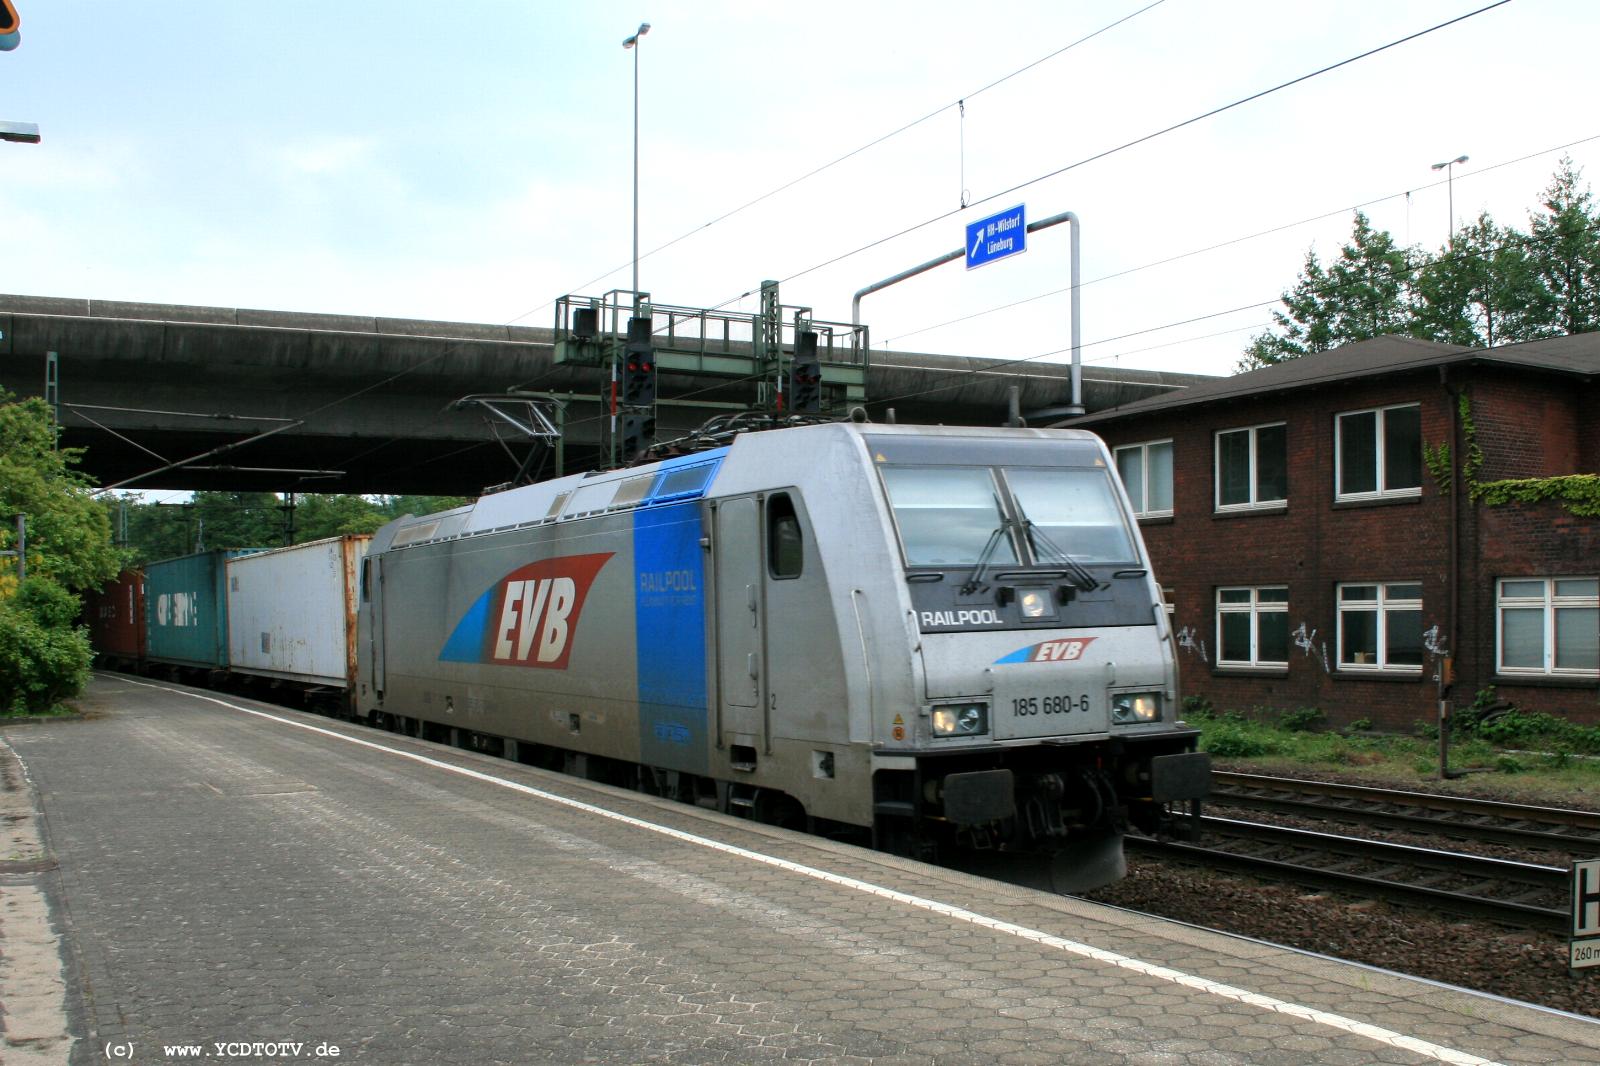  Bahnhof Hamburg-Harburg, 18.05.2011, 15:15 185 680-6 Richtung Norden 